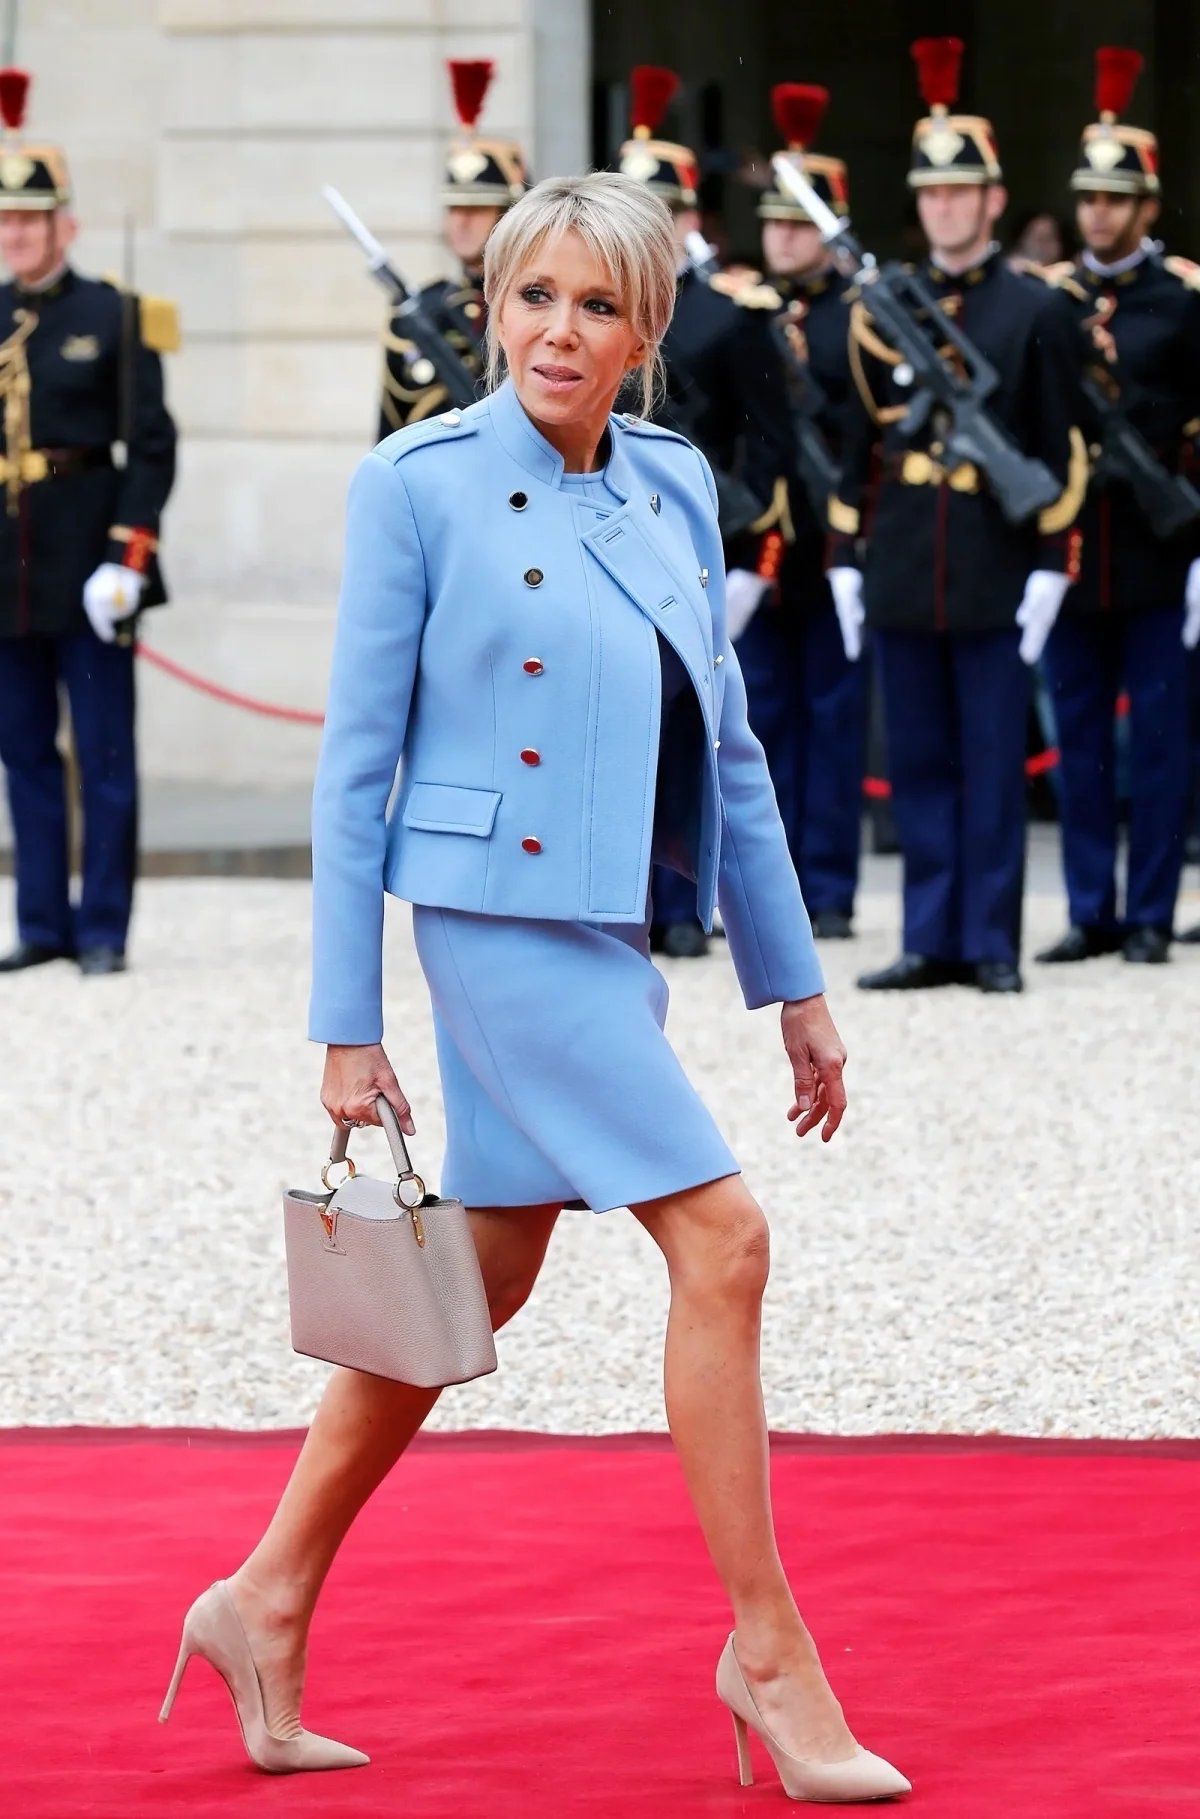 tailleur femme avec jupe courte blazer bleu pastel chaussures talons nude